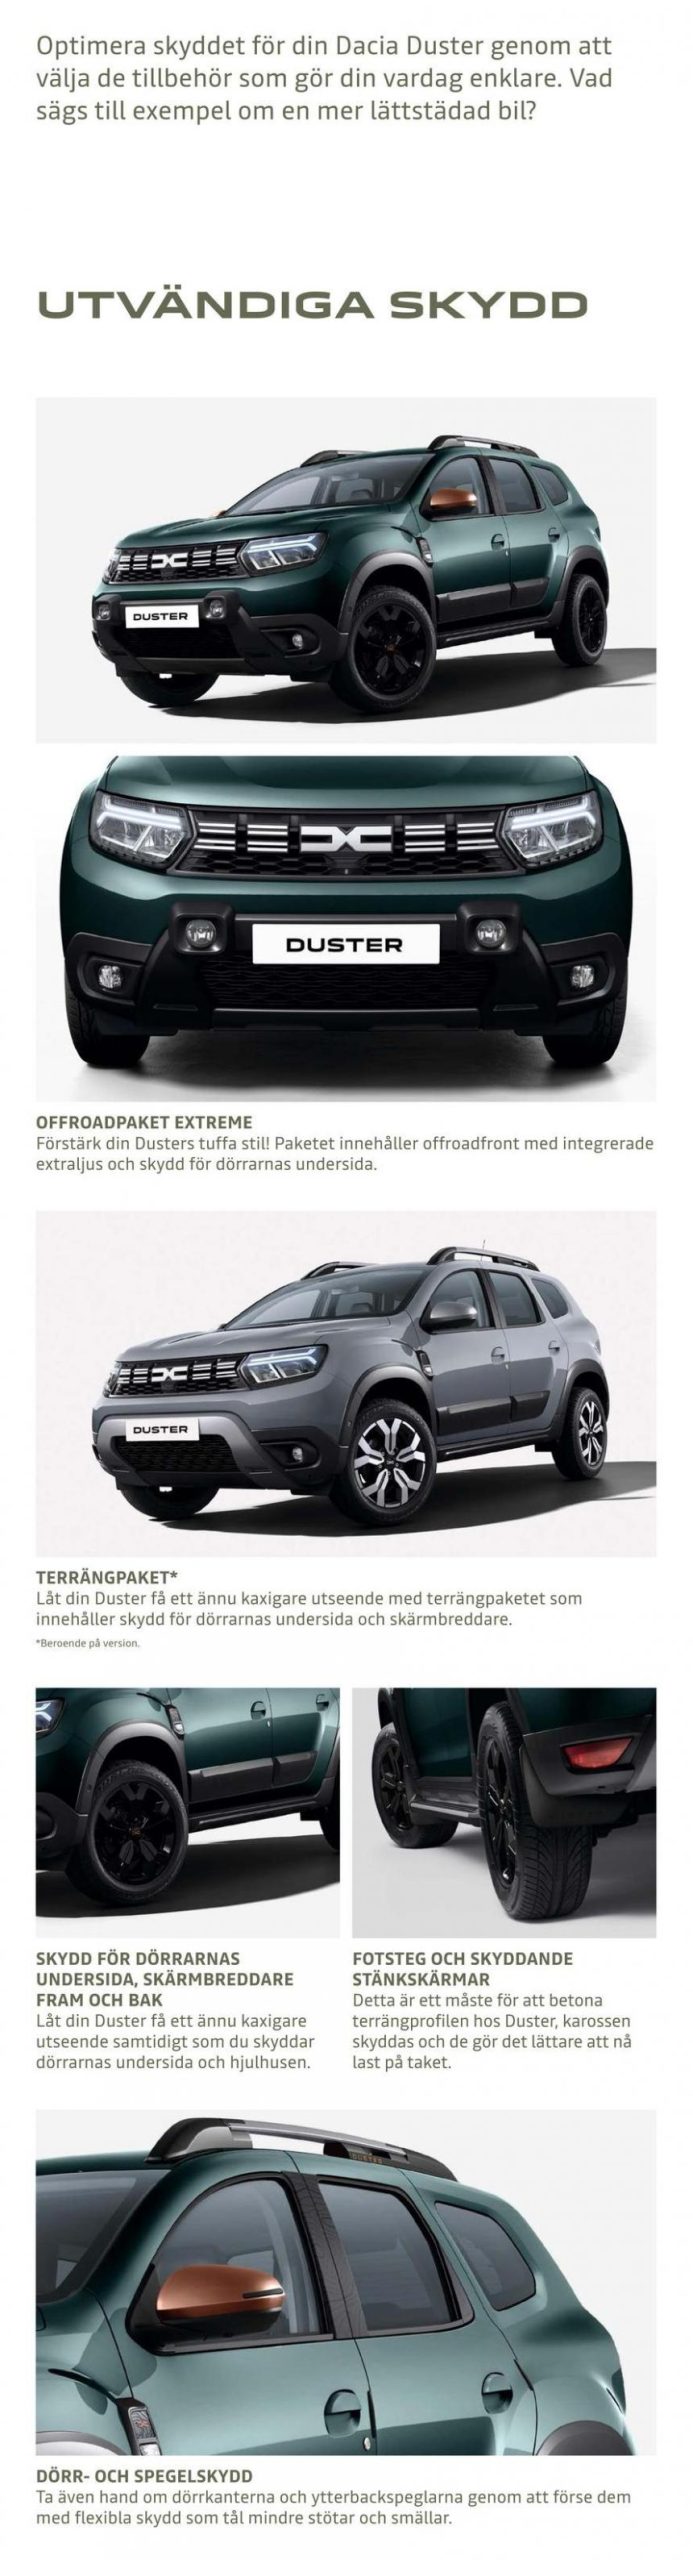 Dacia Duster - Tillbehörskatalog. Page 7